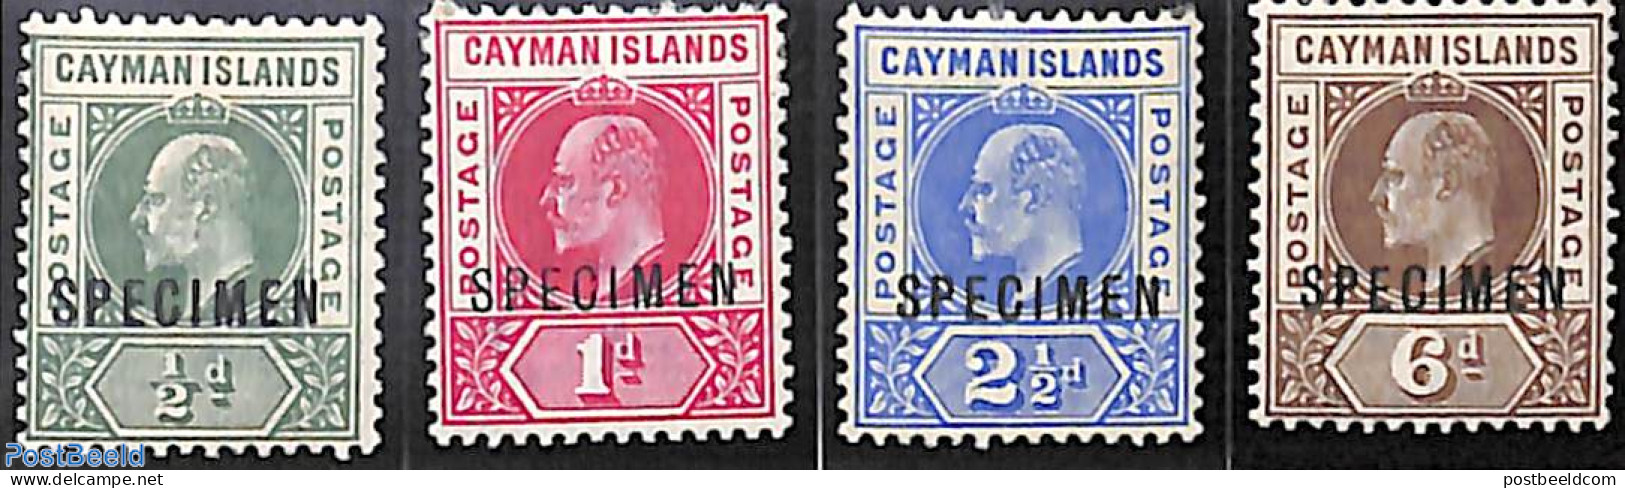 Cayman Islands 1901 Definitives, King Edward VII 4v, SPECIMEN, Unused (hinged) - Cayman Islands